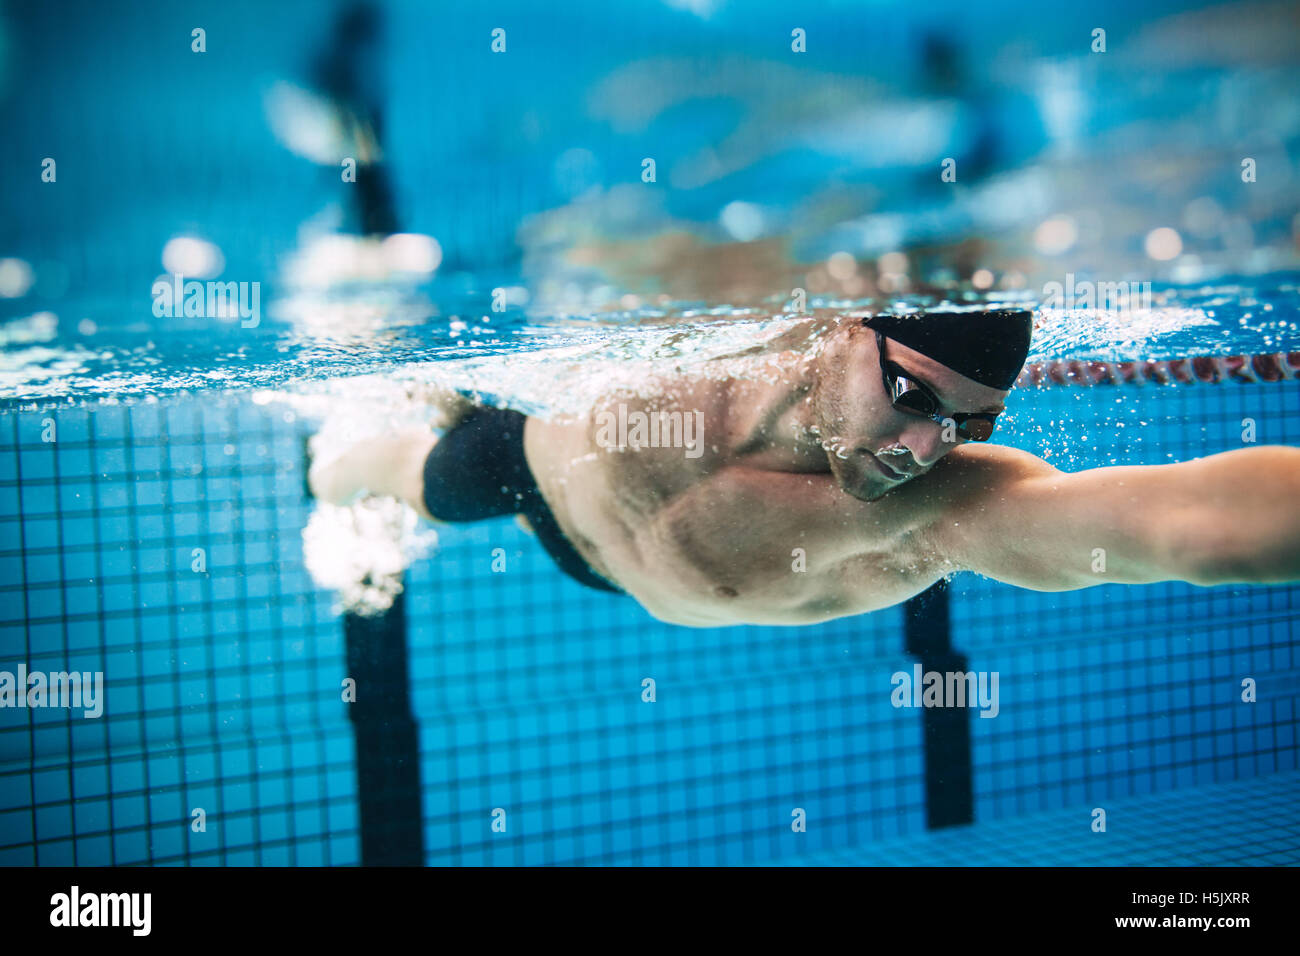 Ripresa subacquea professionale atleta maschio di nuoto in piscina. L'uomo nuotatore in azione. Foto Stock